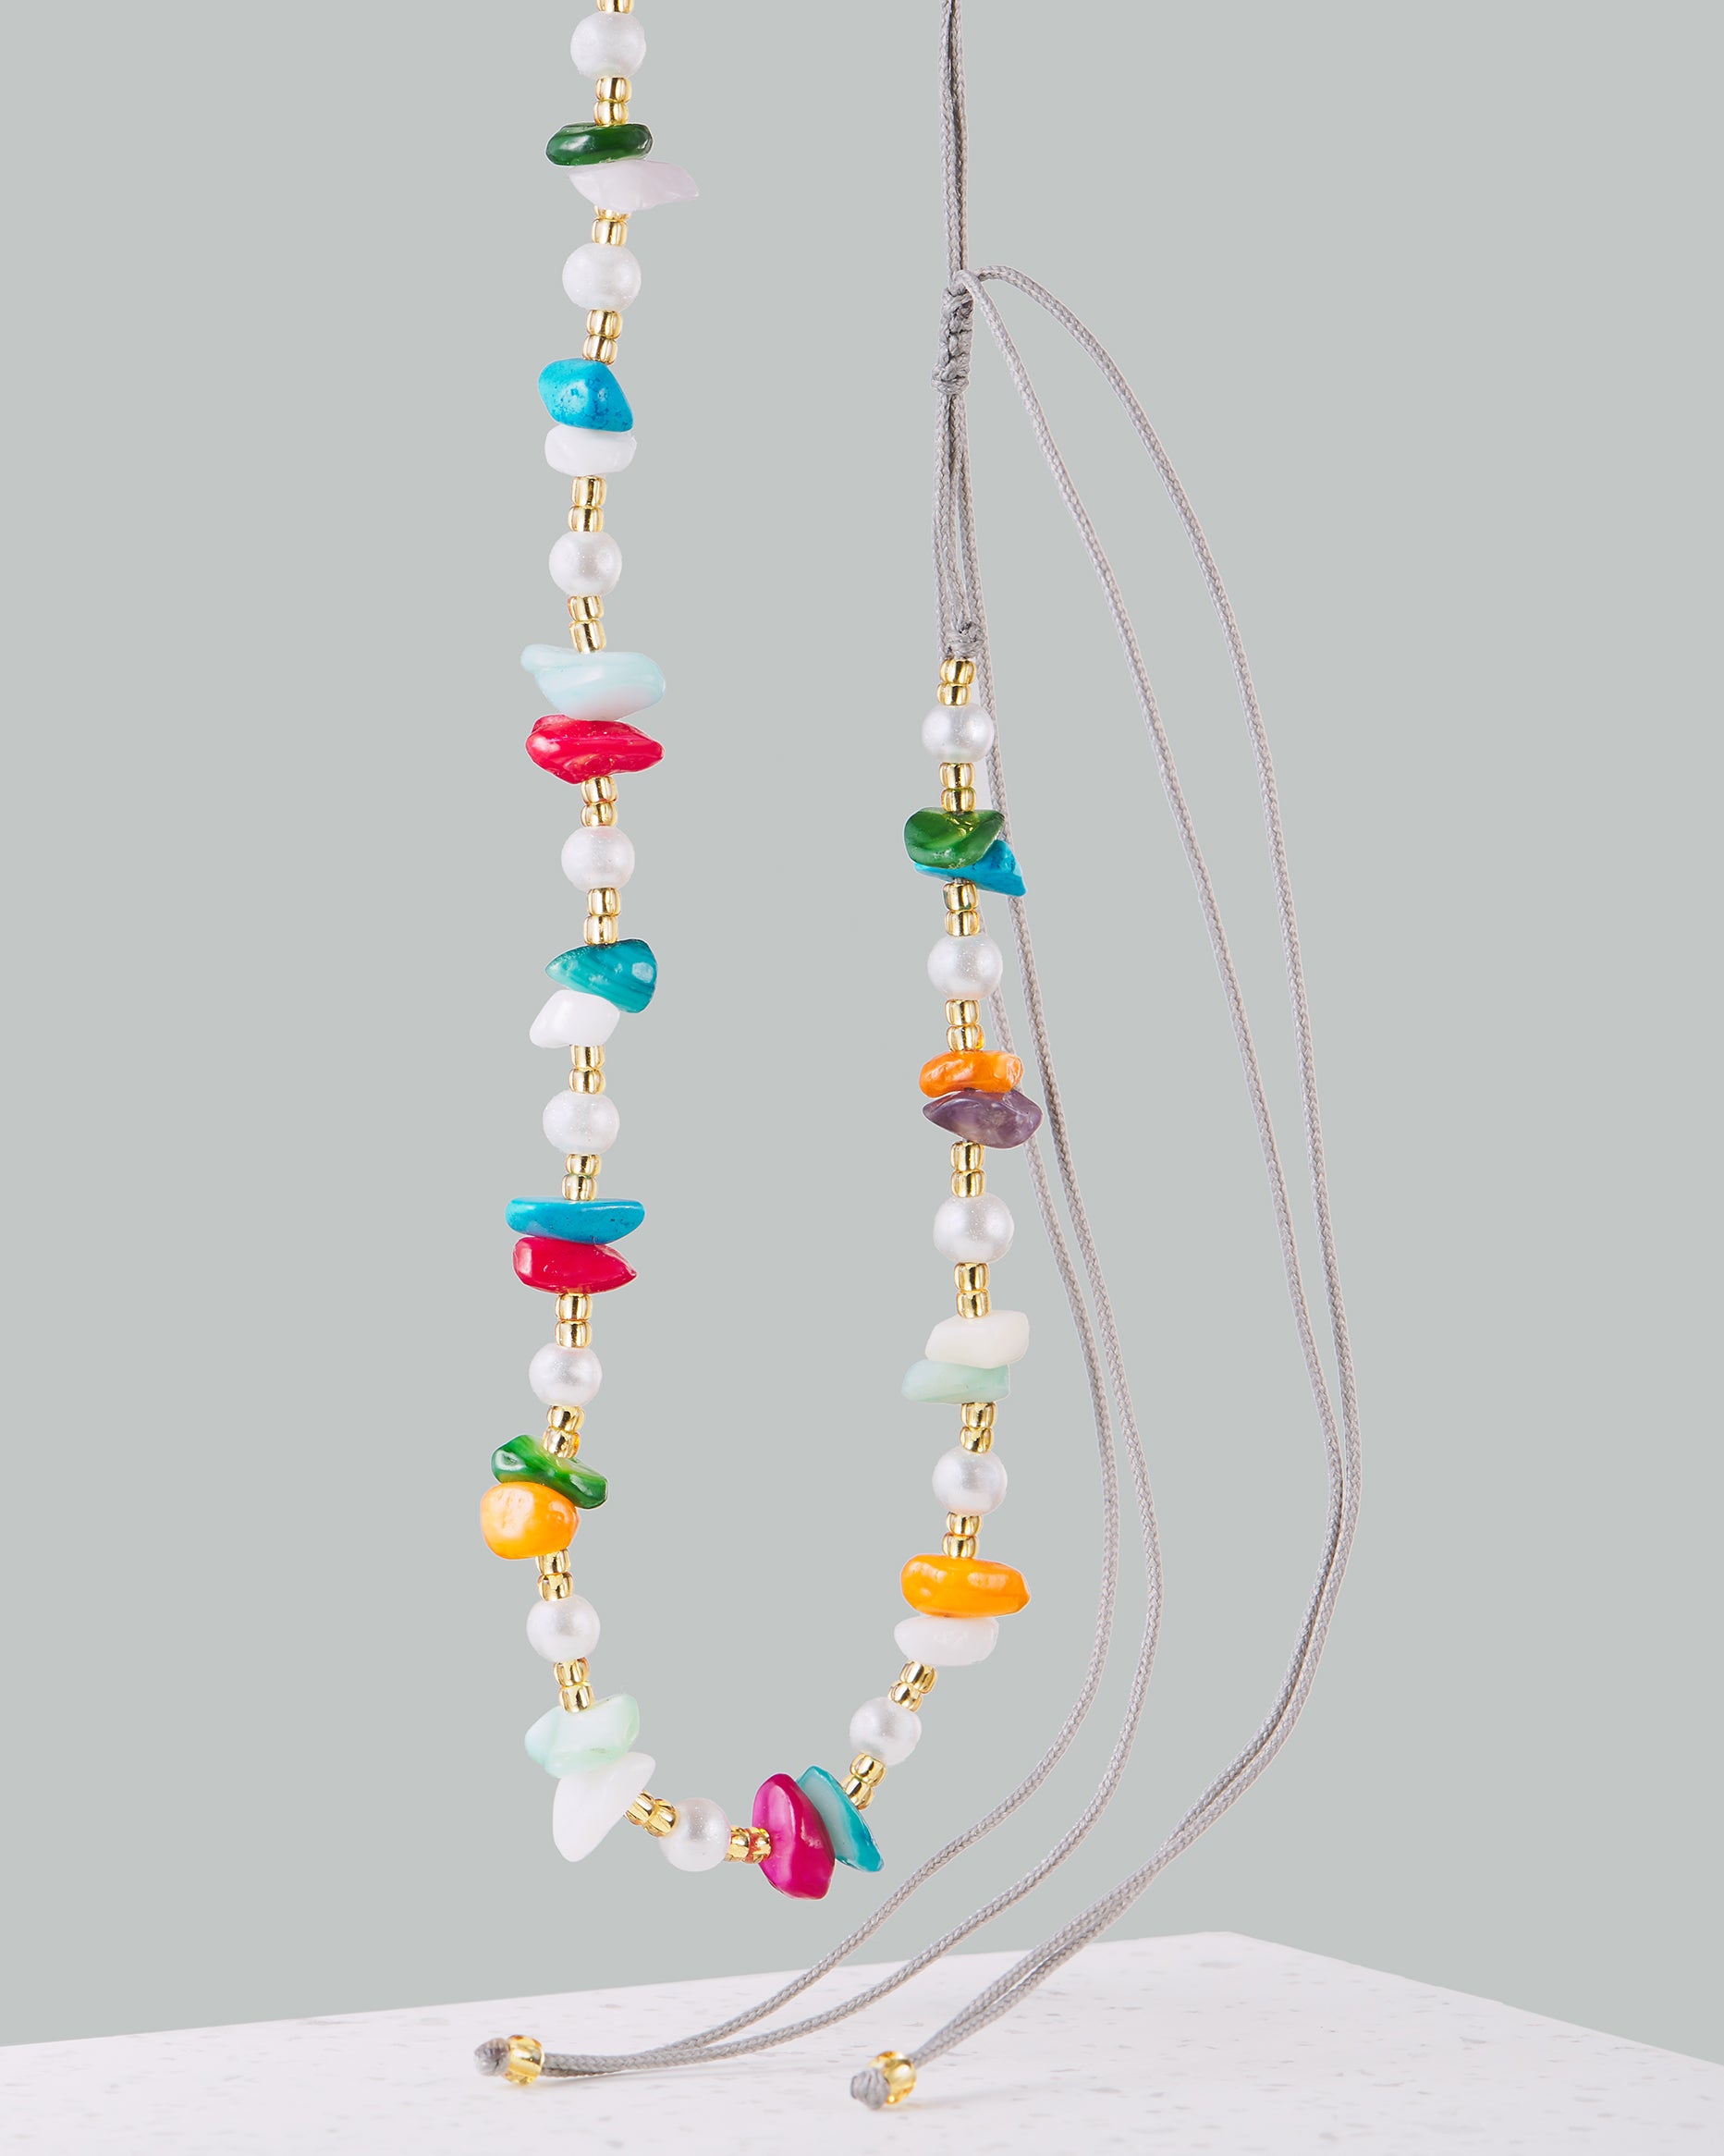 Bunte Kette | Handgemachter Choker mit bunten Perlen und Steinen von VERLAN Jewellery | Flexibel verstellbar mit bunten Steinen | Fair und umweltschonend handmade in Bali